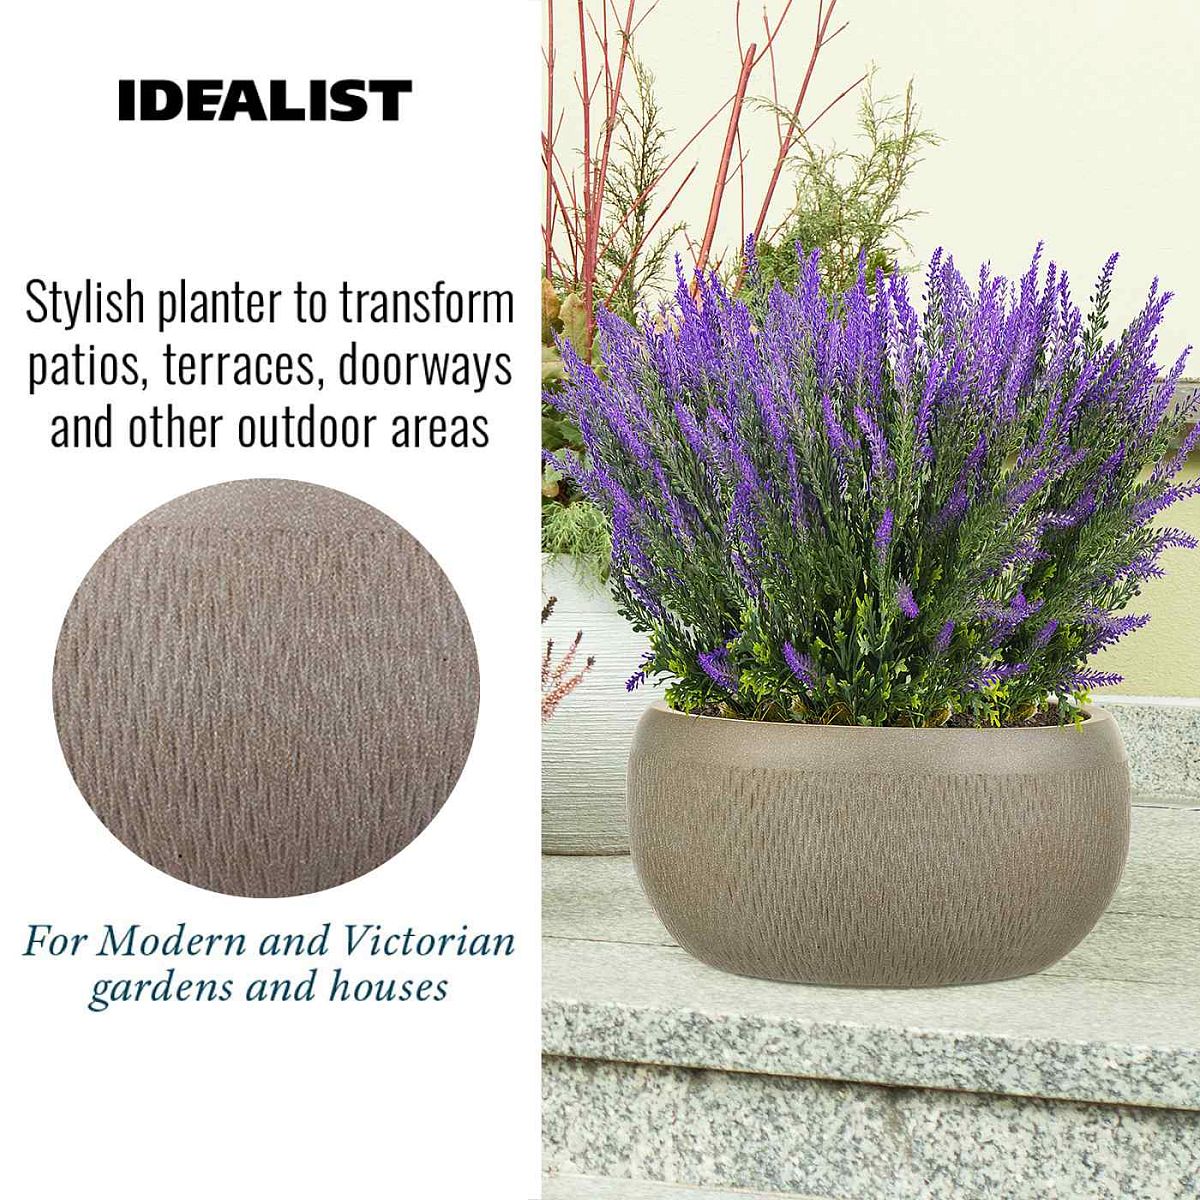 IDEALIST Lite Mesh Style Bowl Planter Outdoor Plant Pot